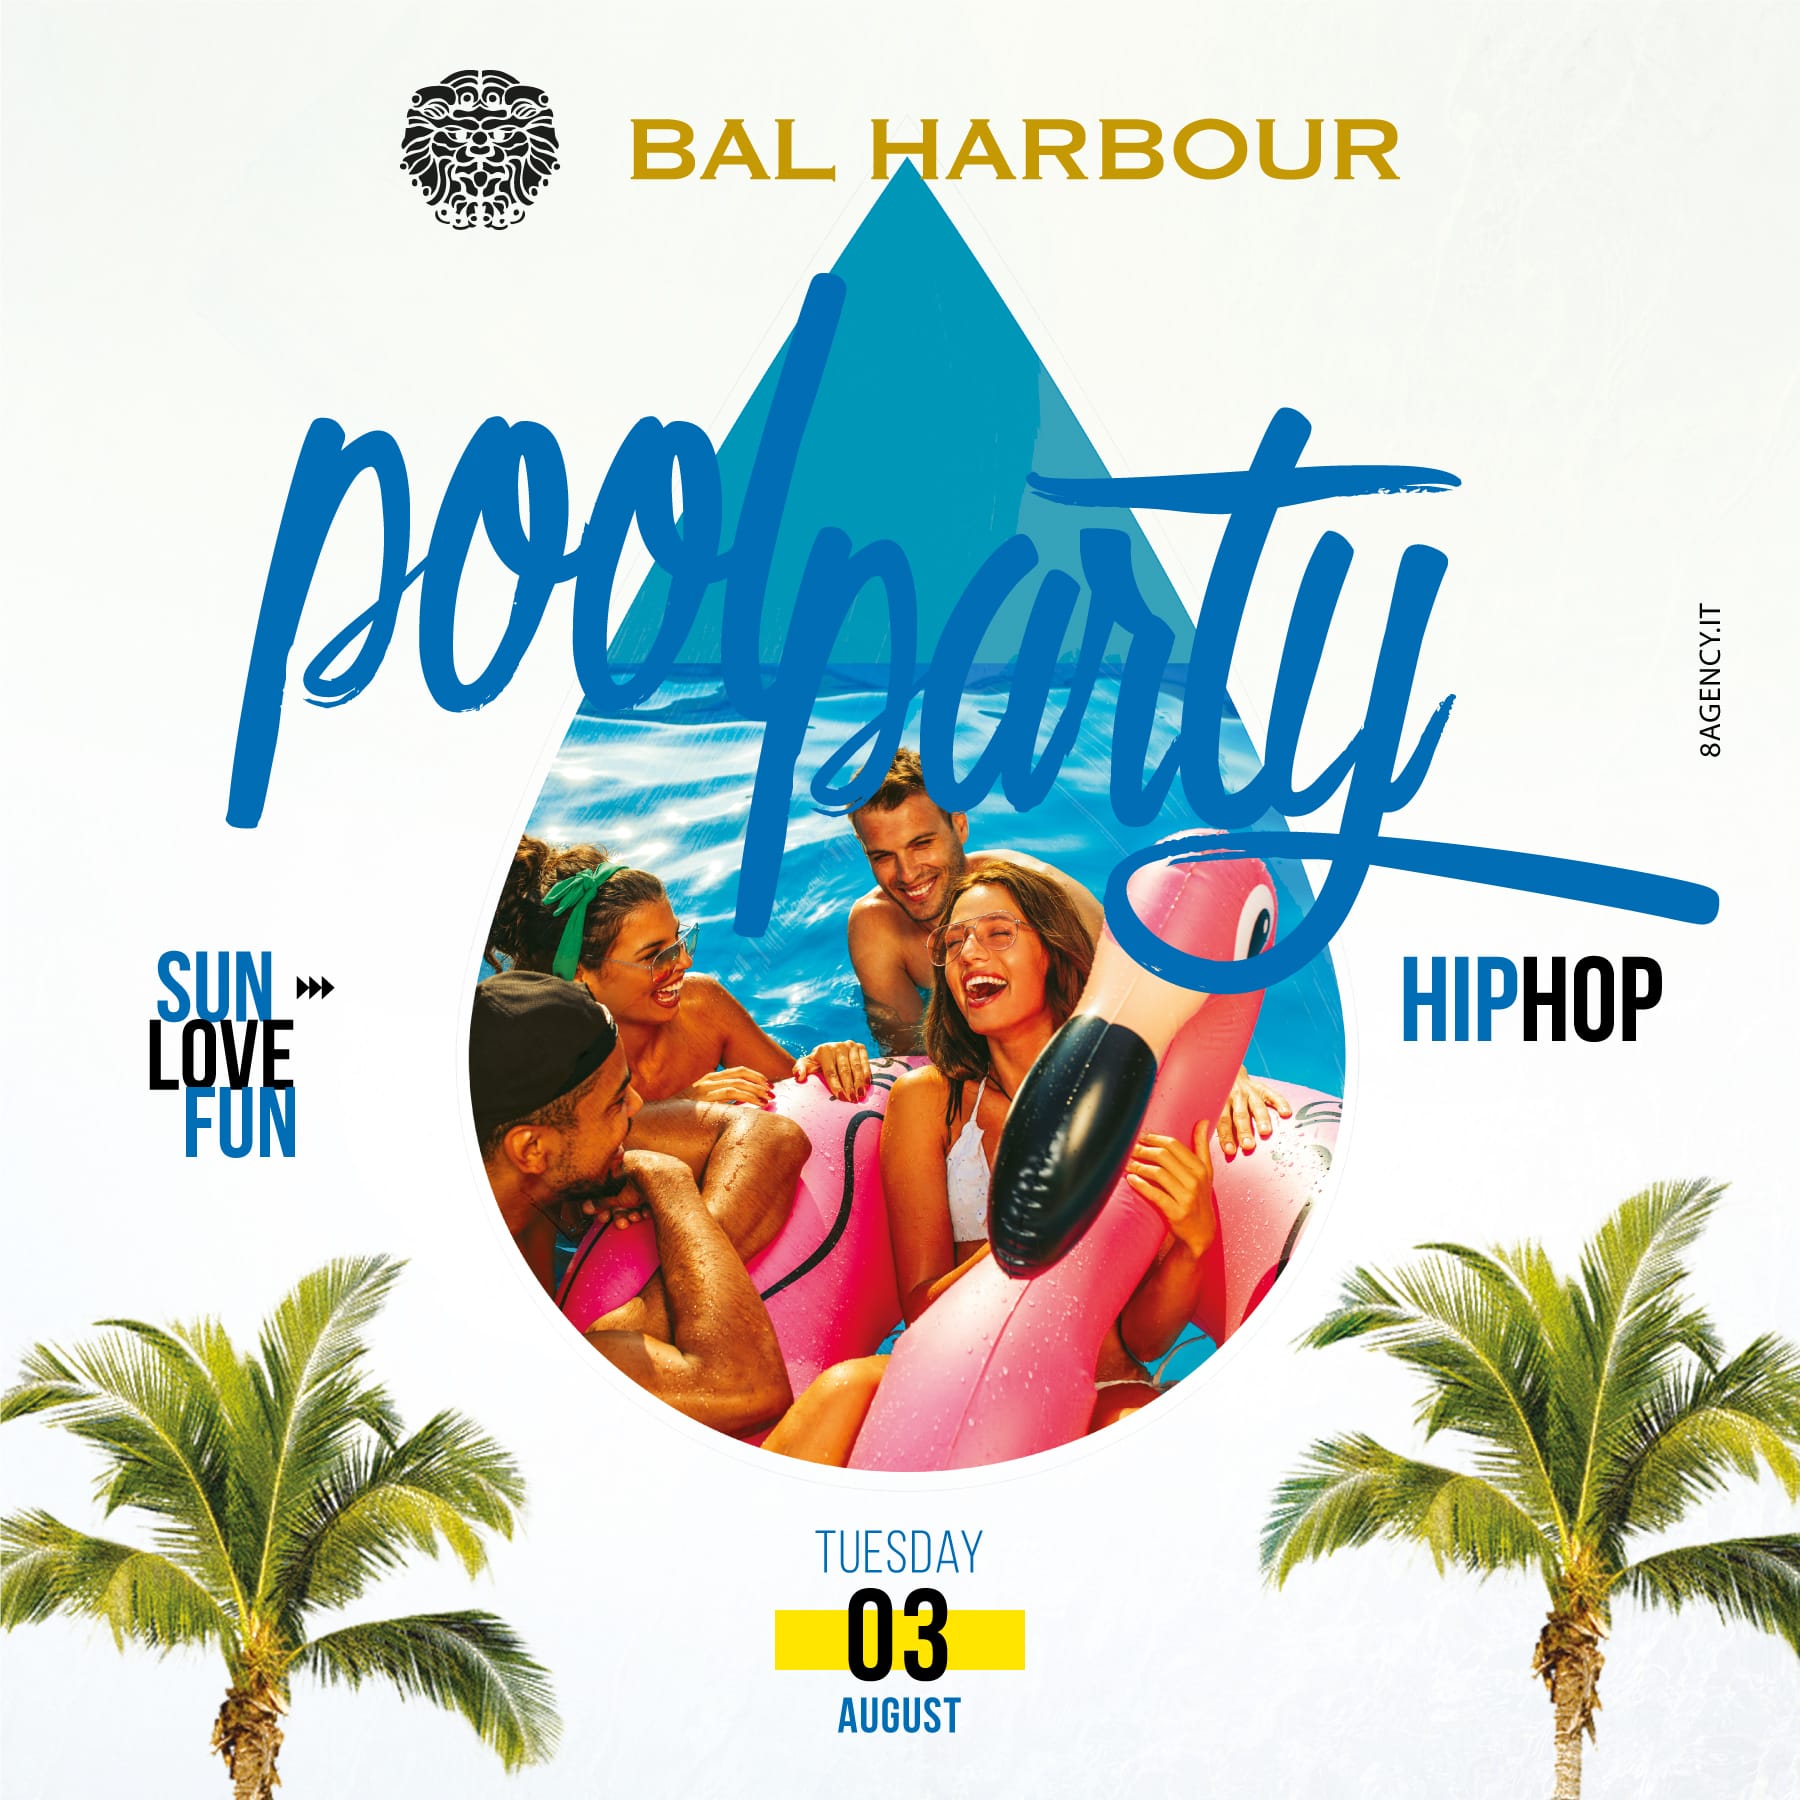 Pool Party Martedi 3 agosto Bal Harbour. Feste in Piscina San Teodoro.